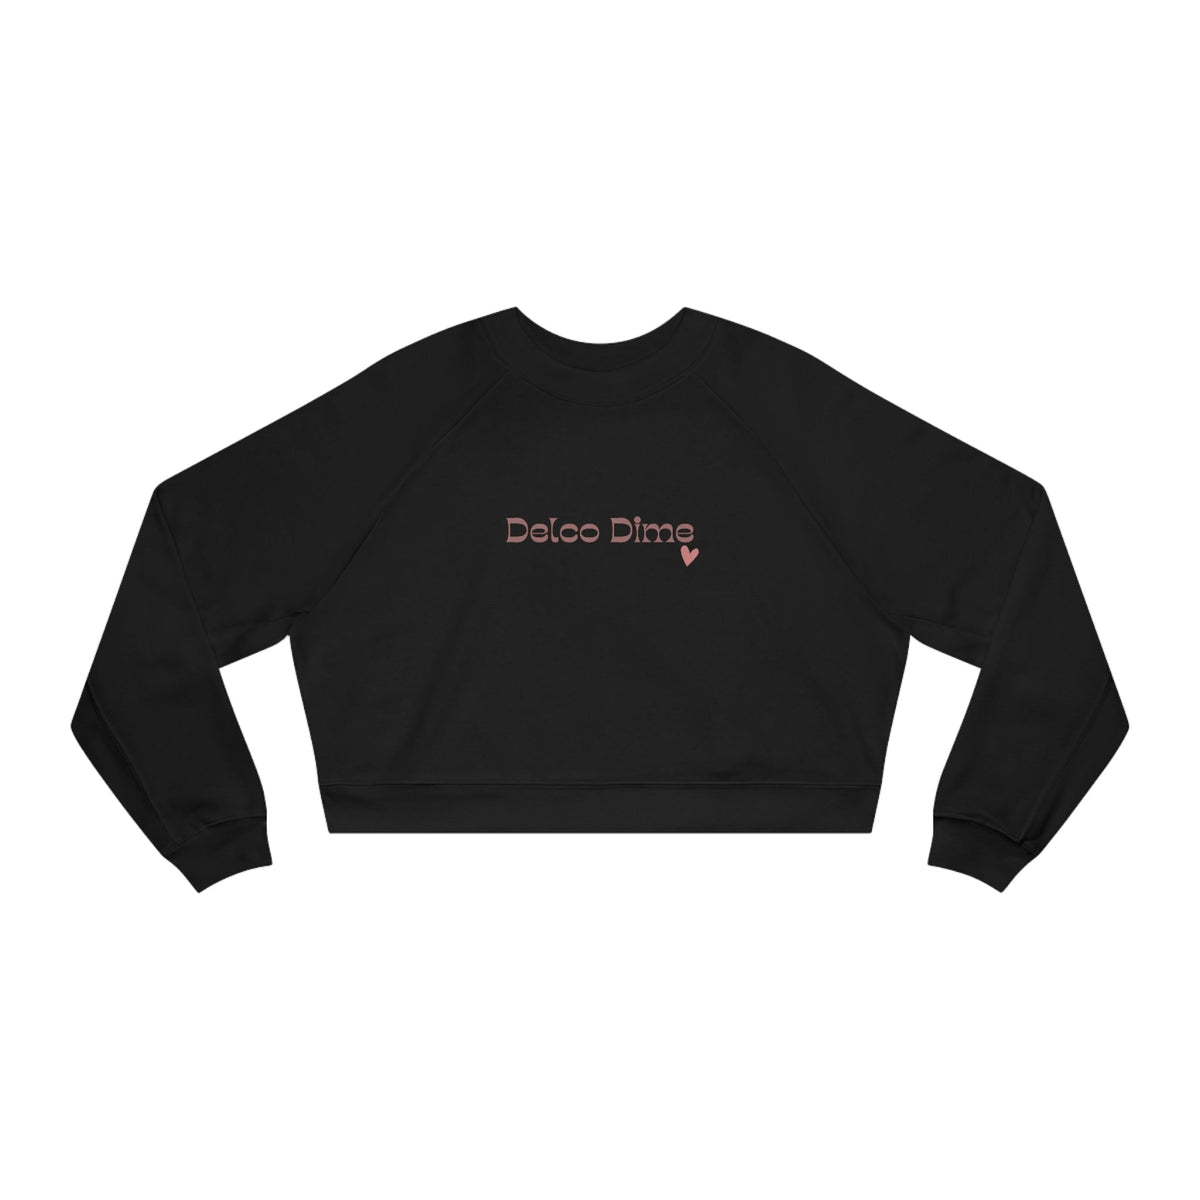 Delco Dime Cropped Fleece Pullover, Women's Fleece Top, Trendy Black Crop Top, Delco PA Gift